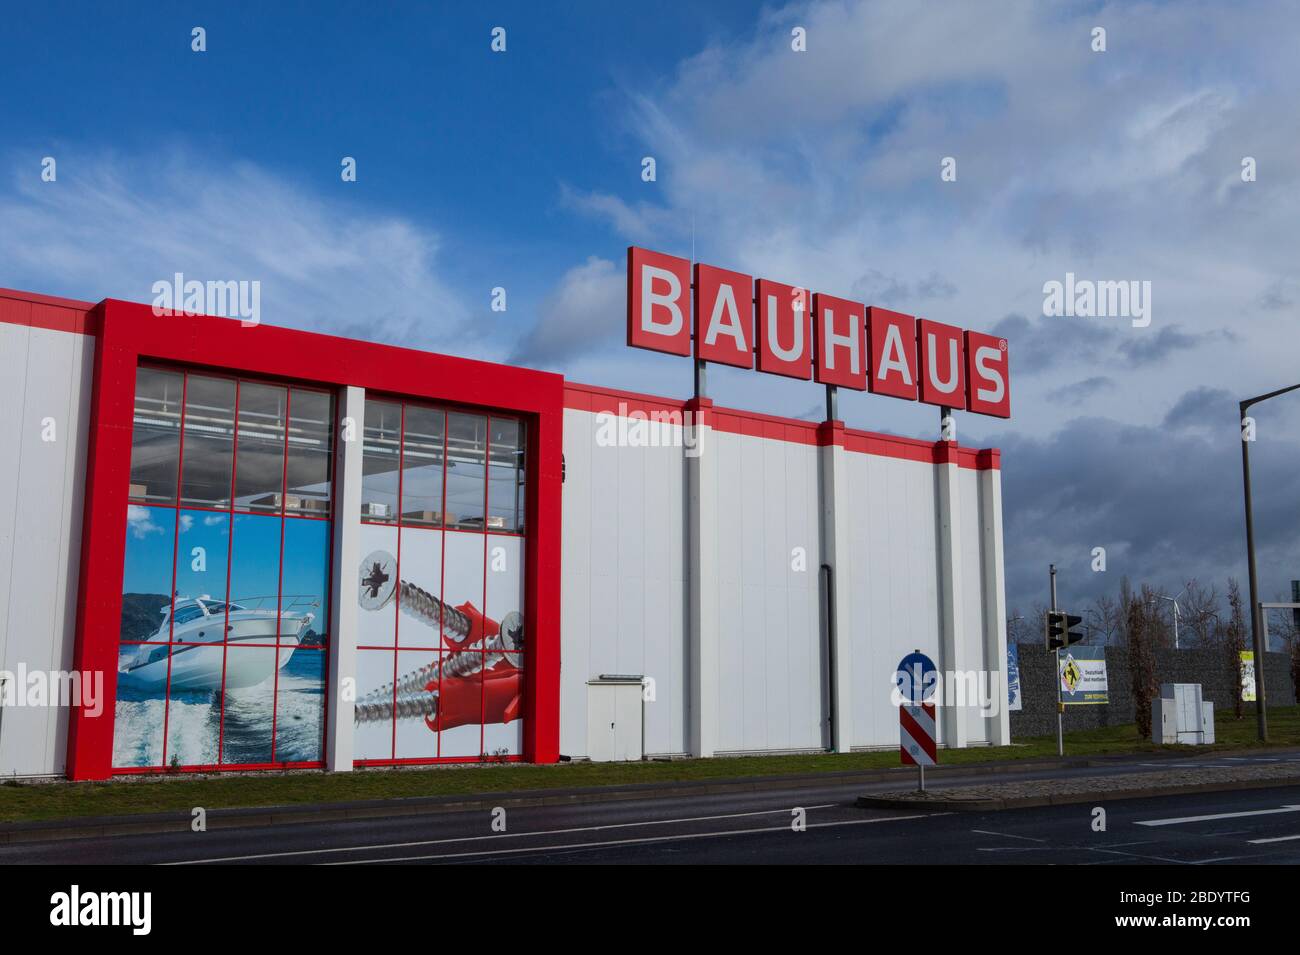 Leipzig, Deutschland-Februar 19,2020: Bauhaus ist eine europaweite Handelskette mit Hauptsitz in der Schweiz, die Produkte für Heimwerkerbedarf, Gartenbau und Wor anbietet Stockfoto